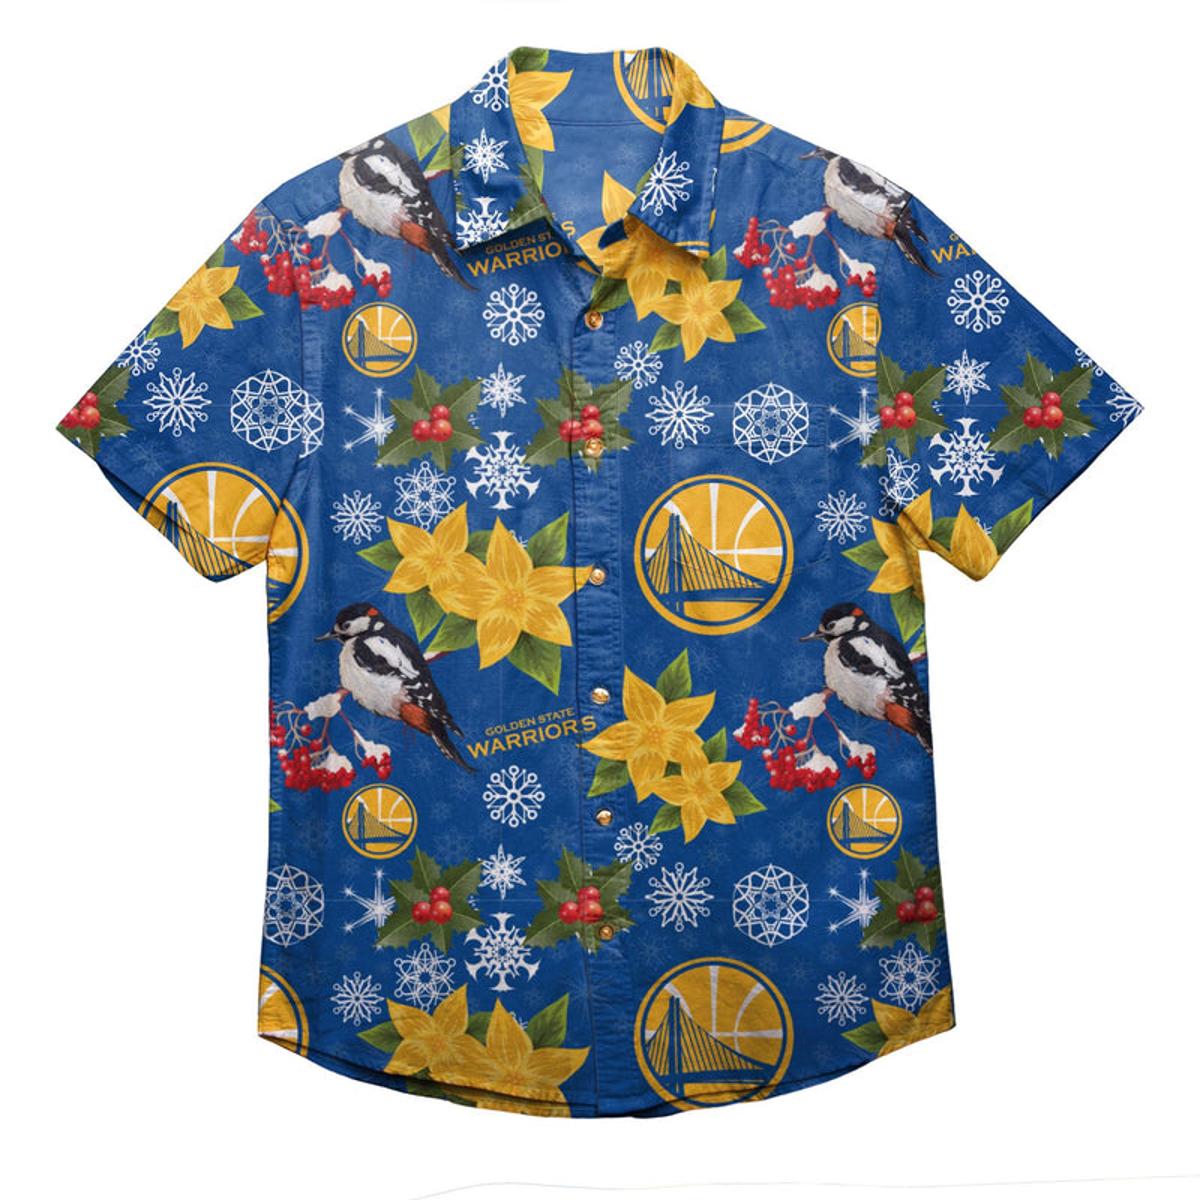 Golden State Warriors Snowflakes Flowers Patterns Hawaiian Shirt For Men Women Nba Fans